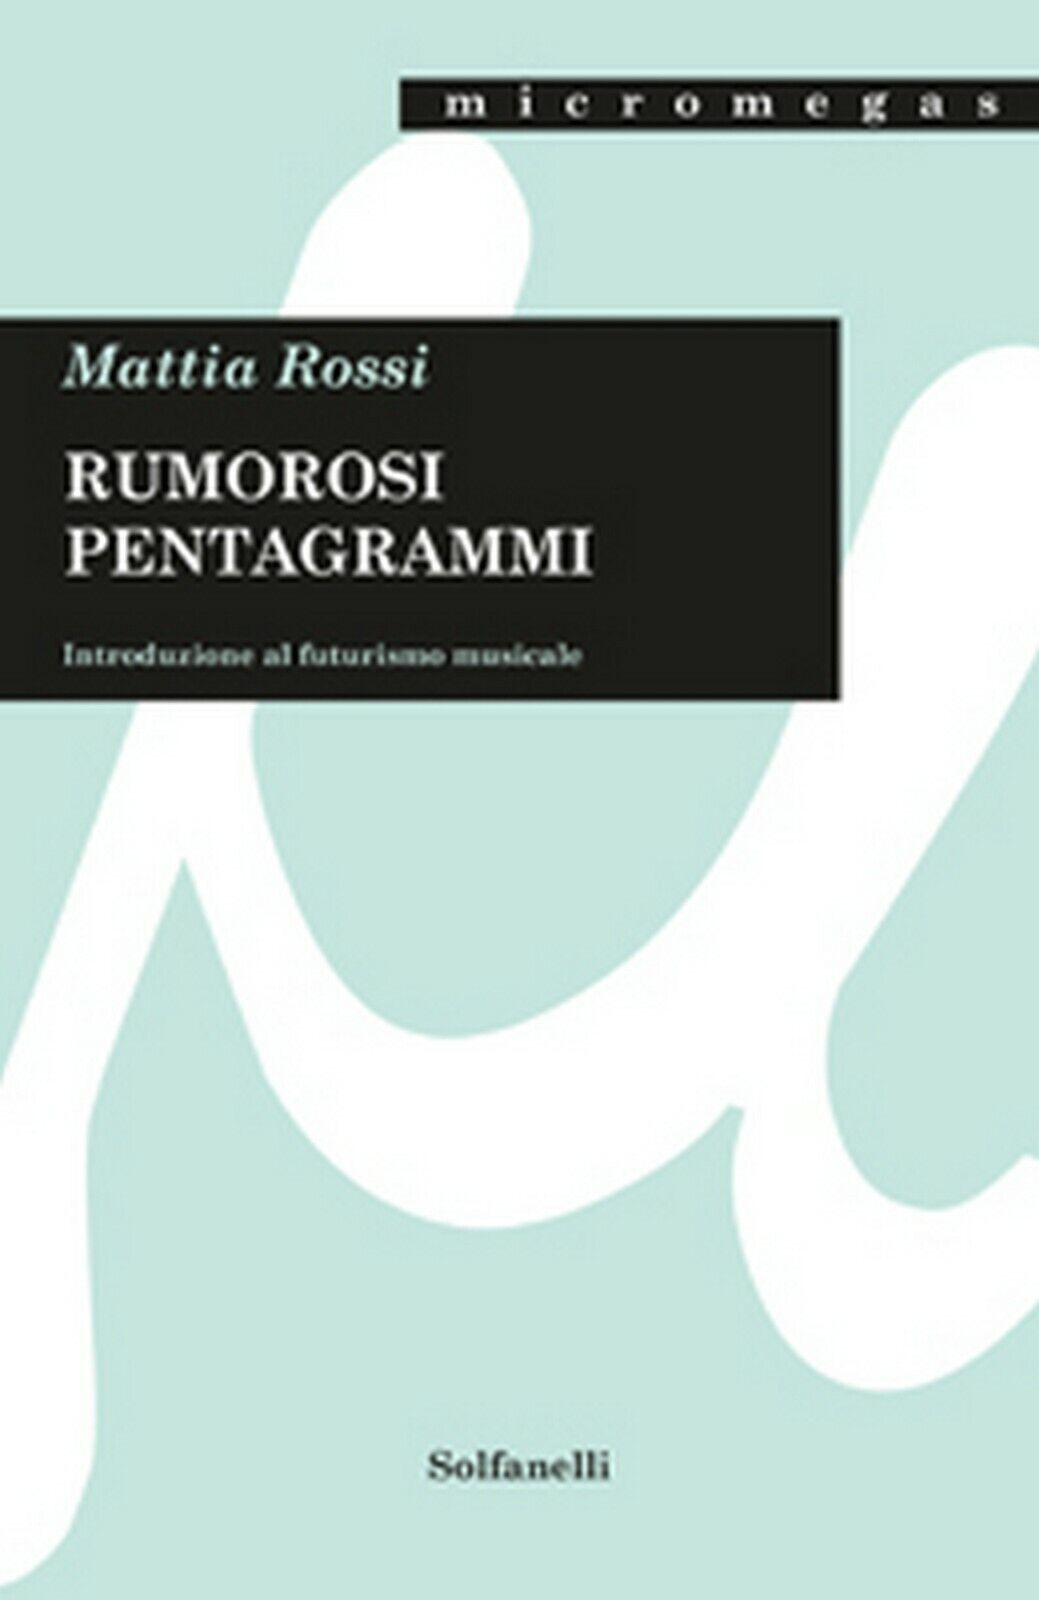 RUMOROSI PENTAGRAMMI  di Mattia Rossi,  Solfanelli Edizioni